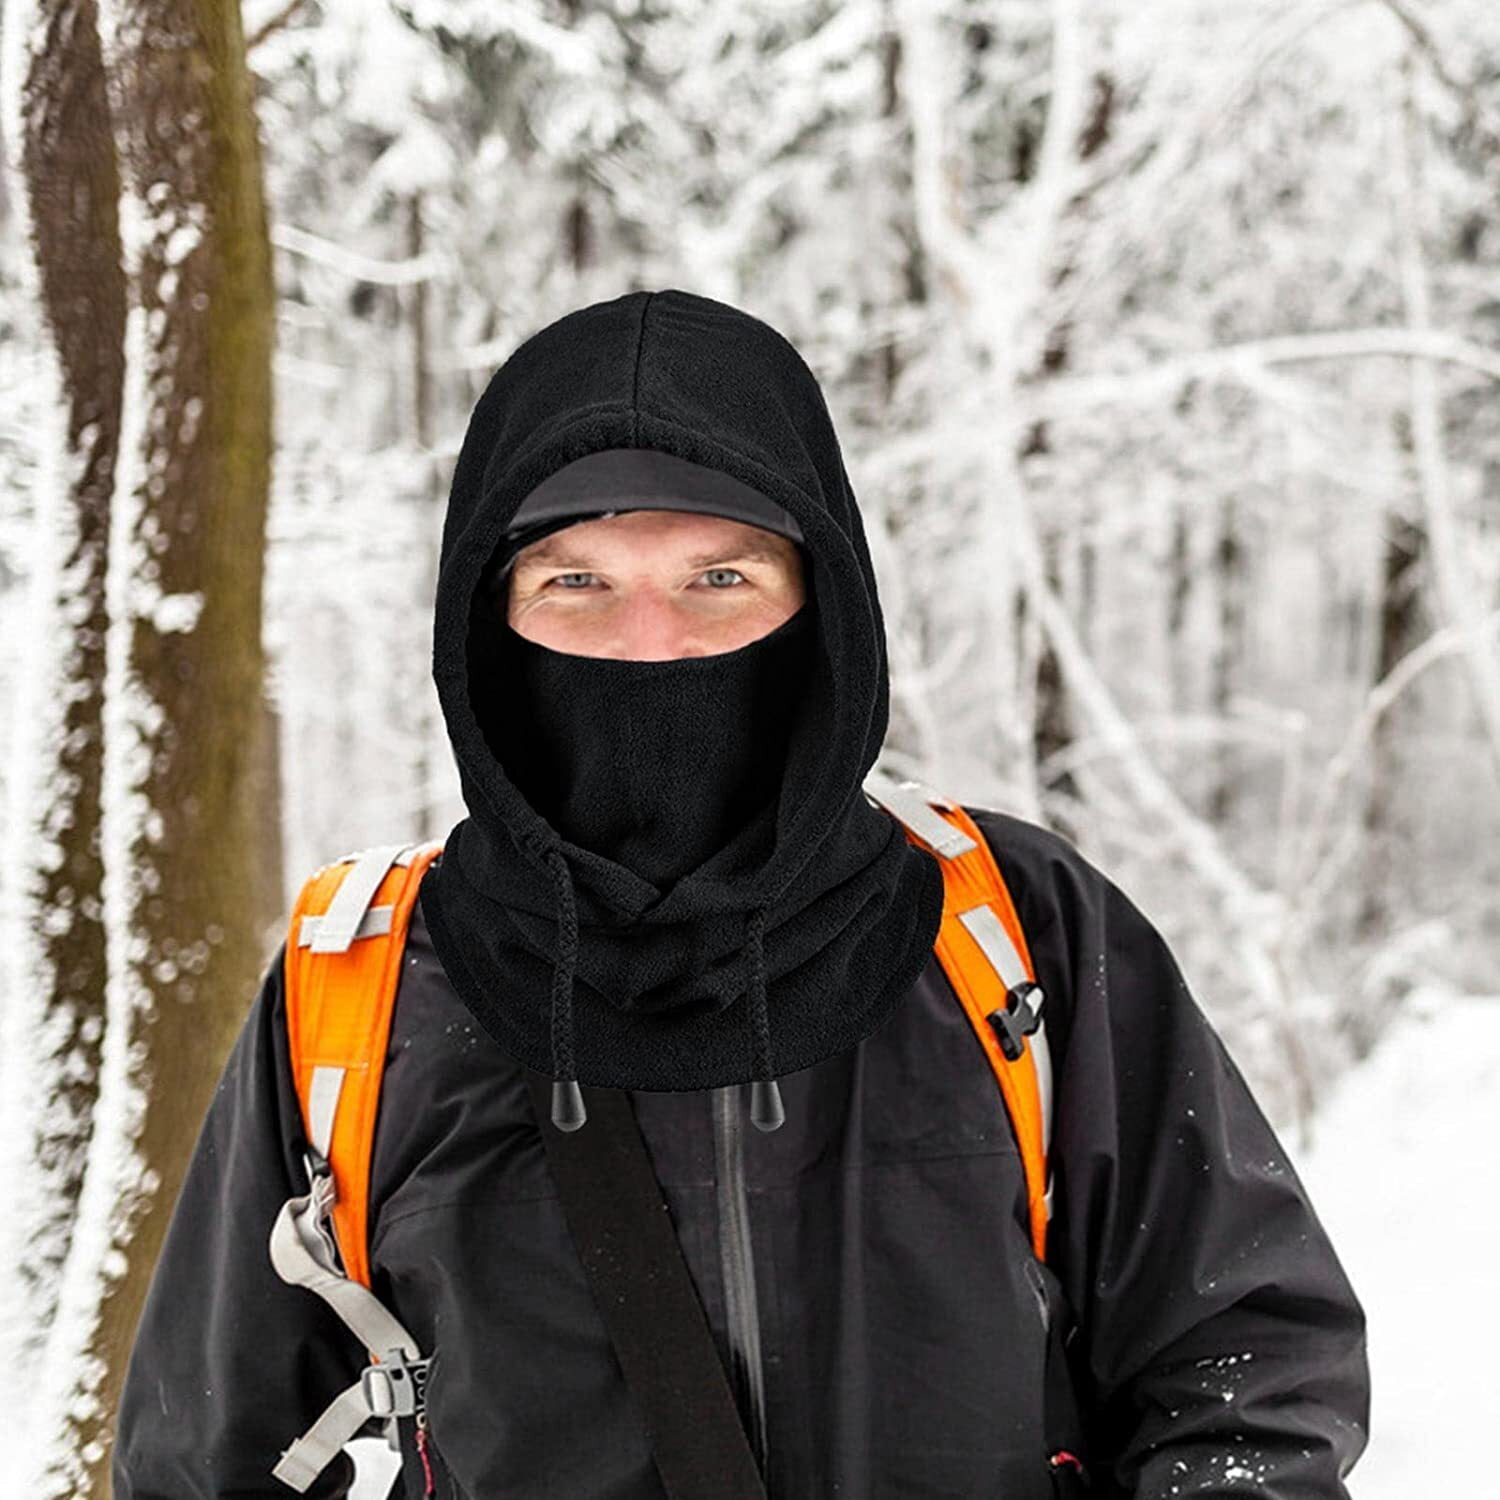 Ski Mask –Balaclava Face Mask – Ski Mask Men - Ski Mask Women - Ski Face  Mask Winter - Snow Mask Ice Fishing Face Mask – Snowboard Mask – Balaclava